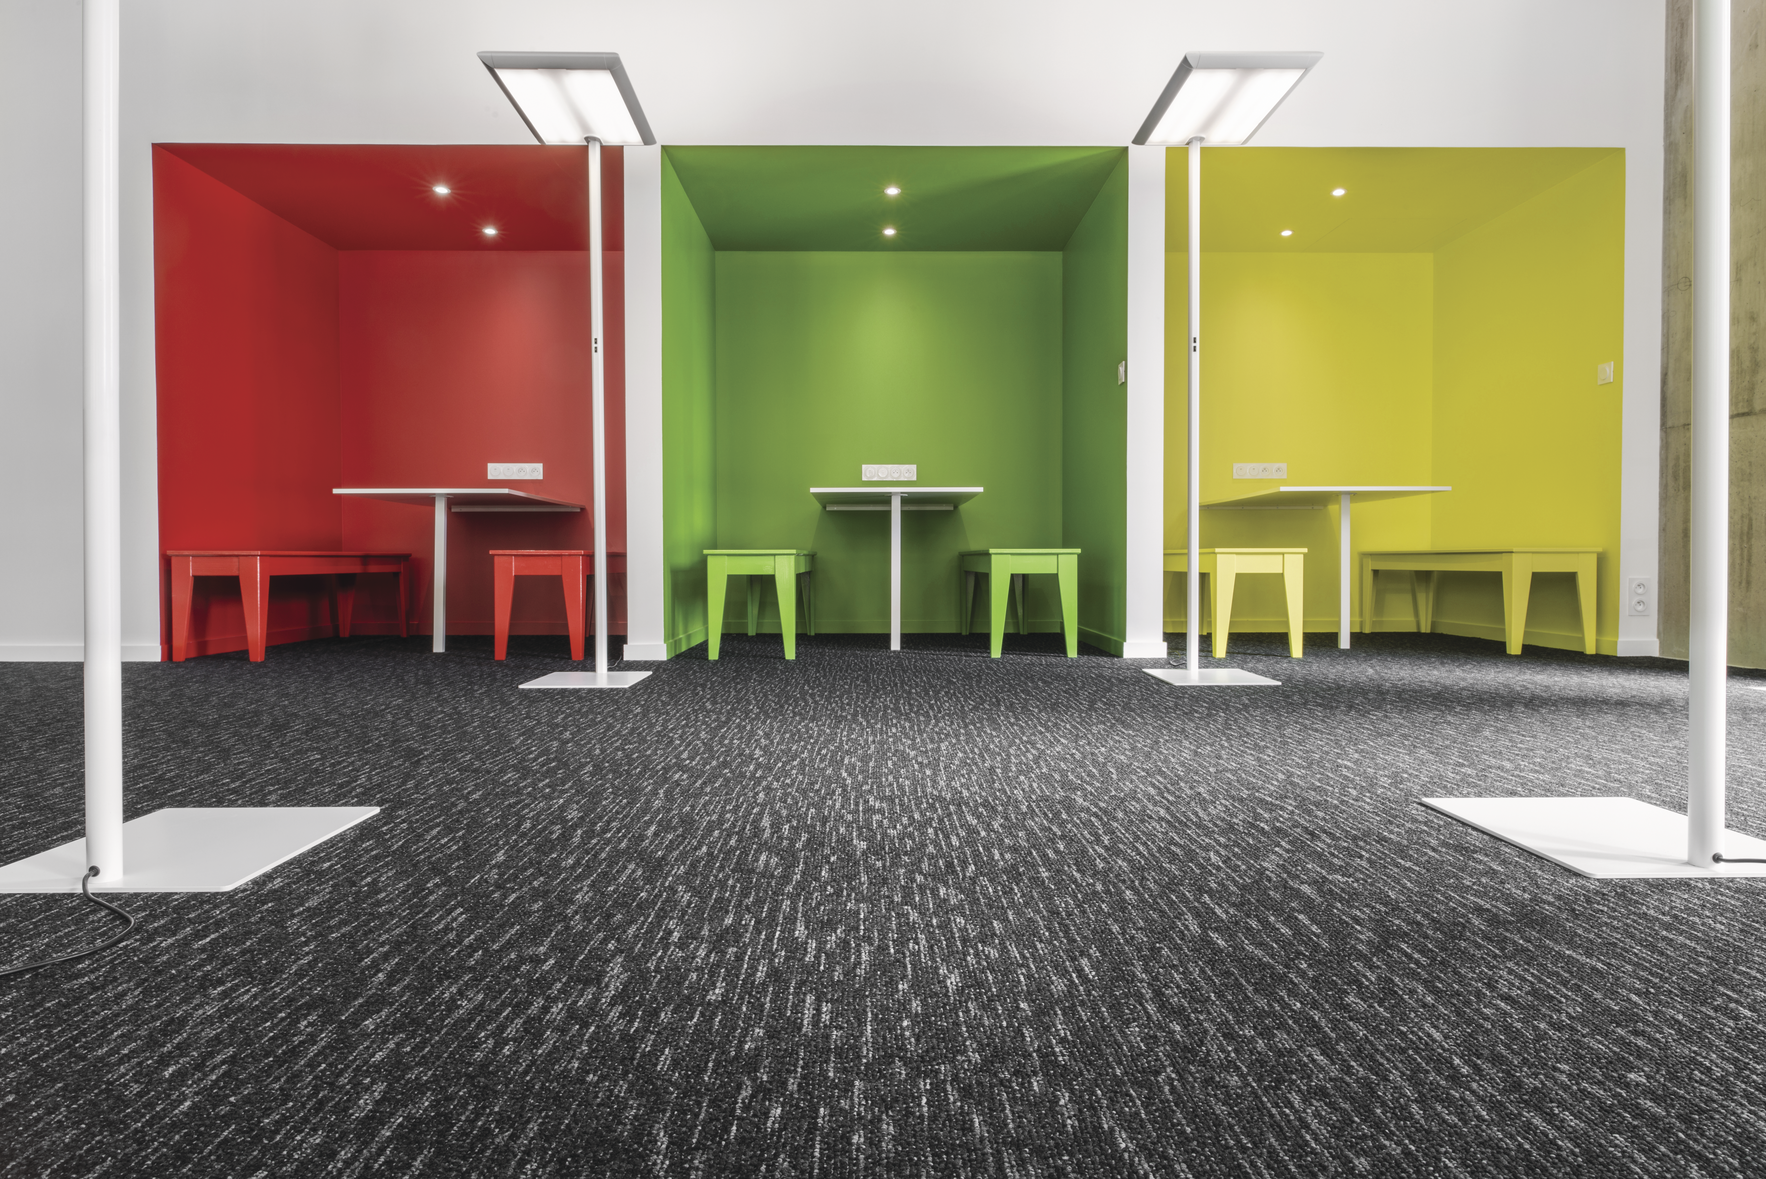 Balsan textilplattor för golv är moderna textilplattor med fransk design för alla typer av miljöer. Slitstart textilgolv för hotell, konferens & kontor. Idéflooring